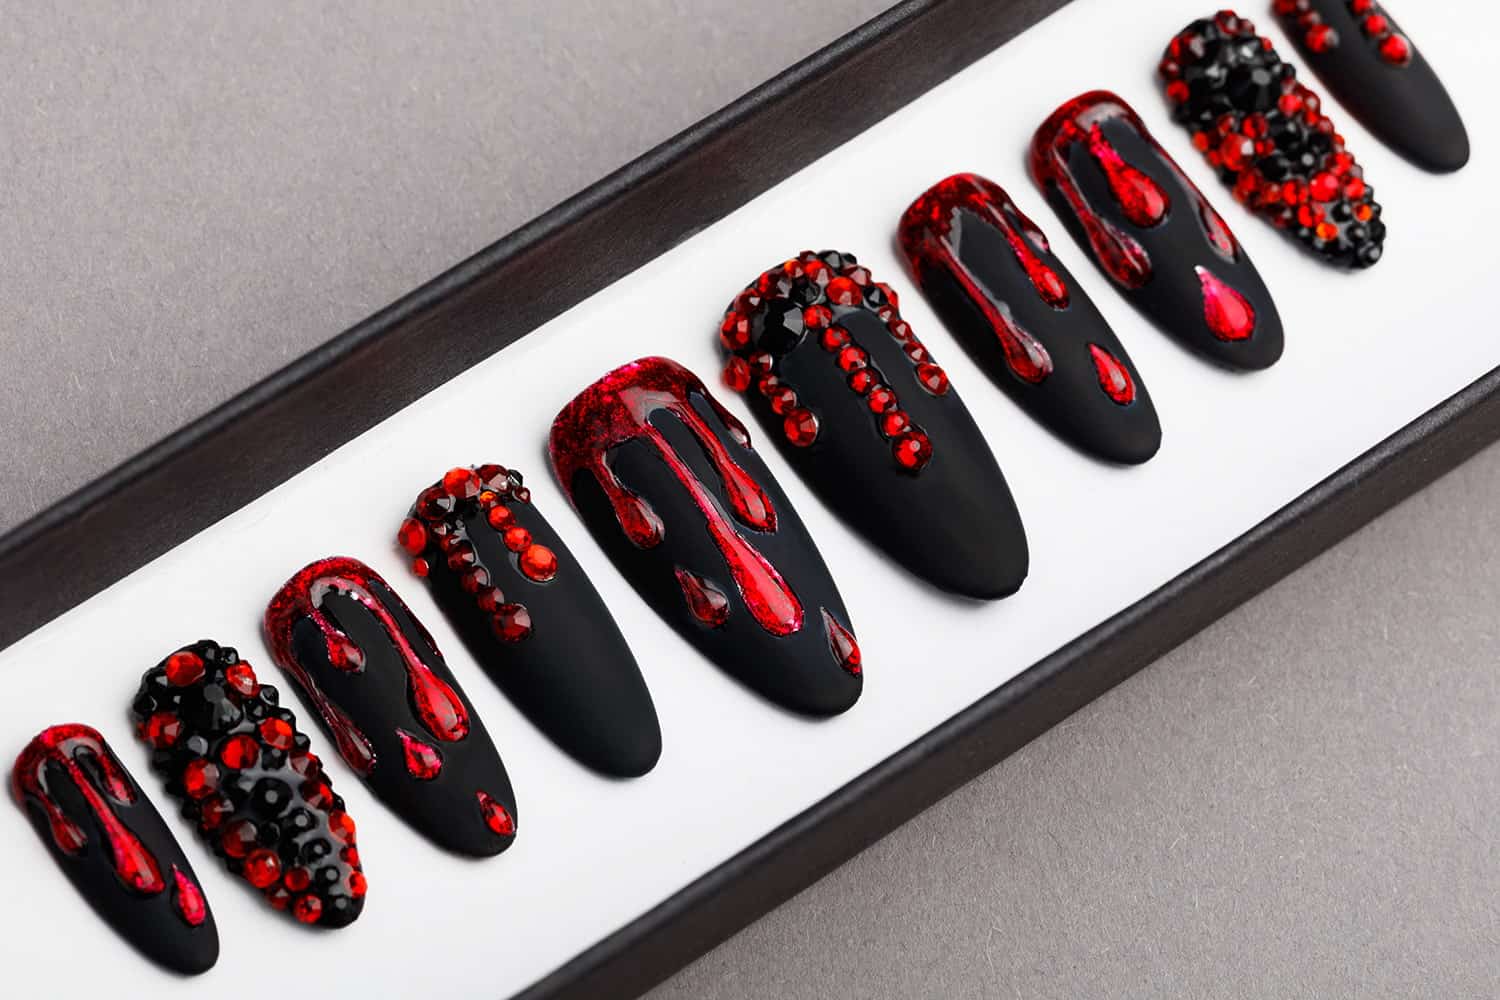 Black And Red Press on Nails with Swarovski Crystals | Gothic nails | Hand painted Nail Art | Fake Nails | False Nails